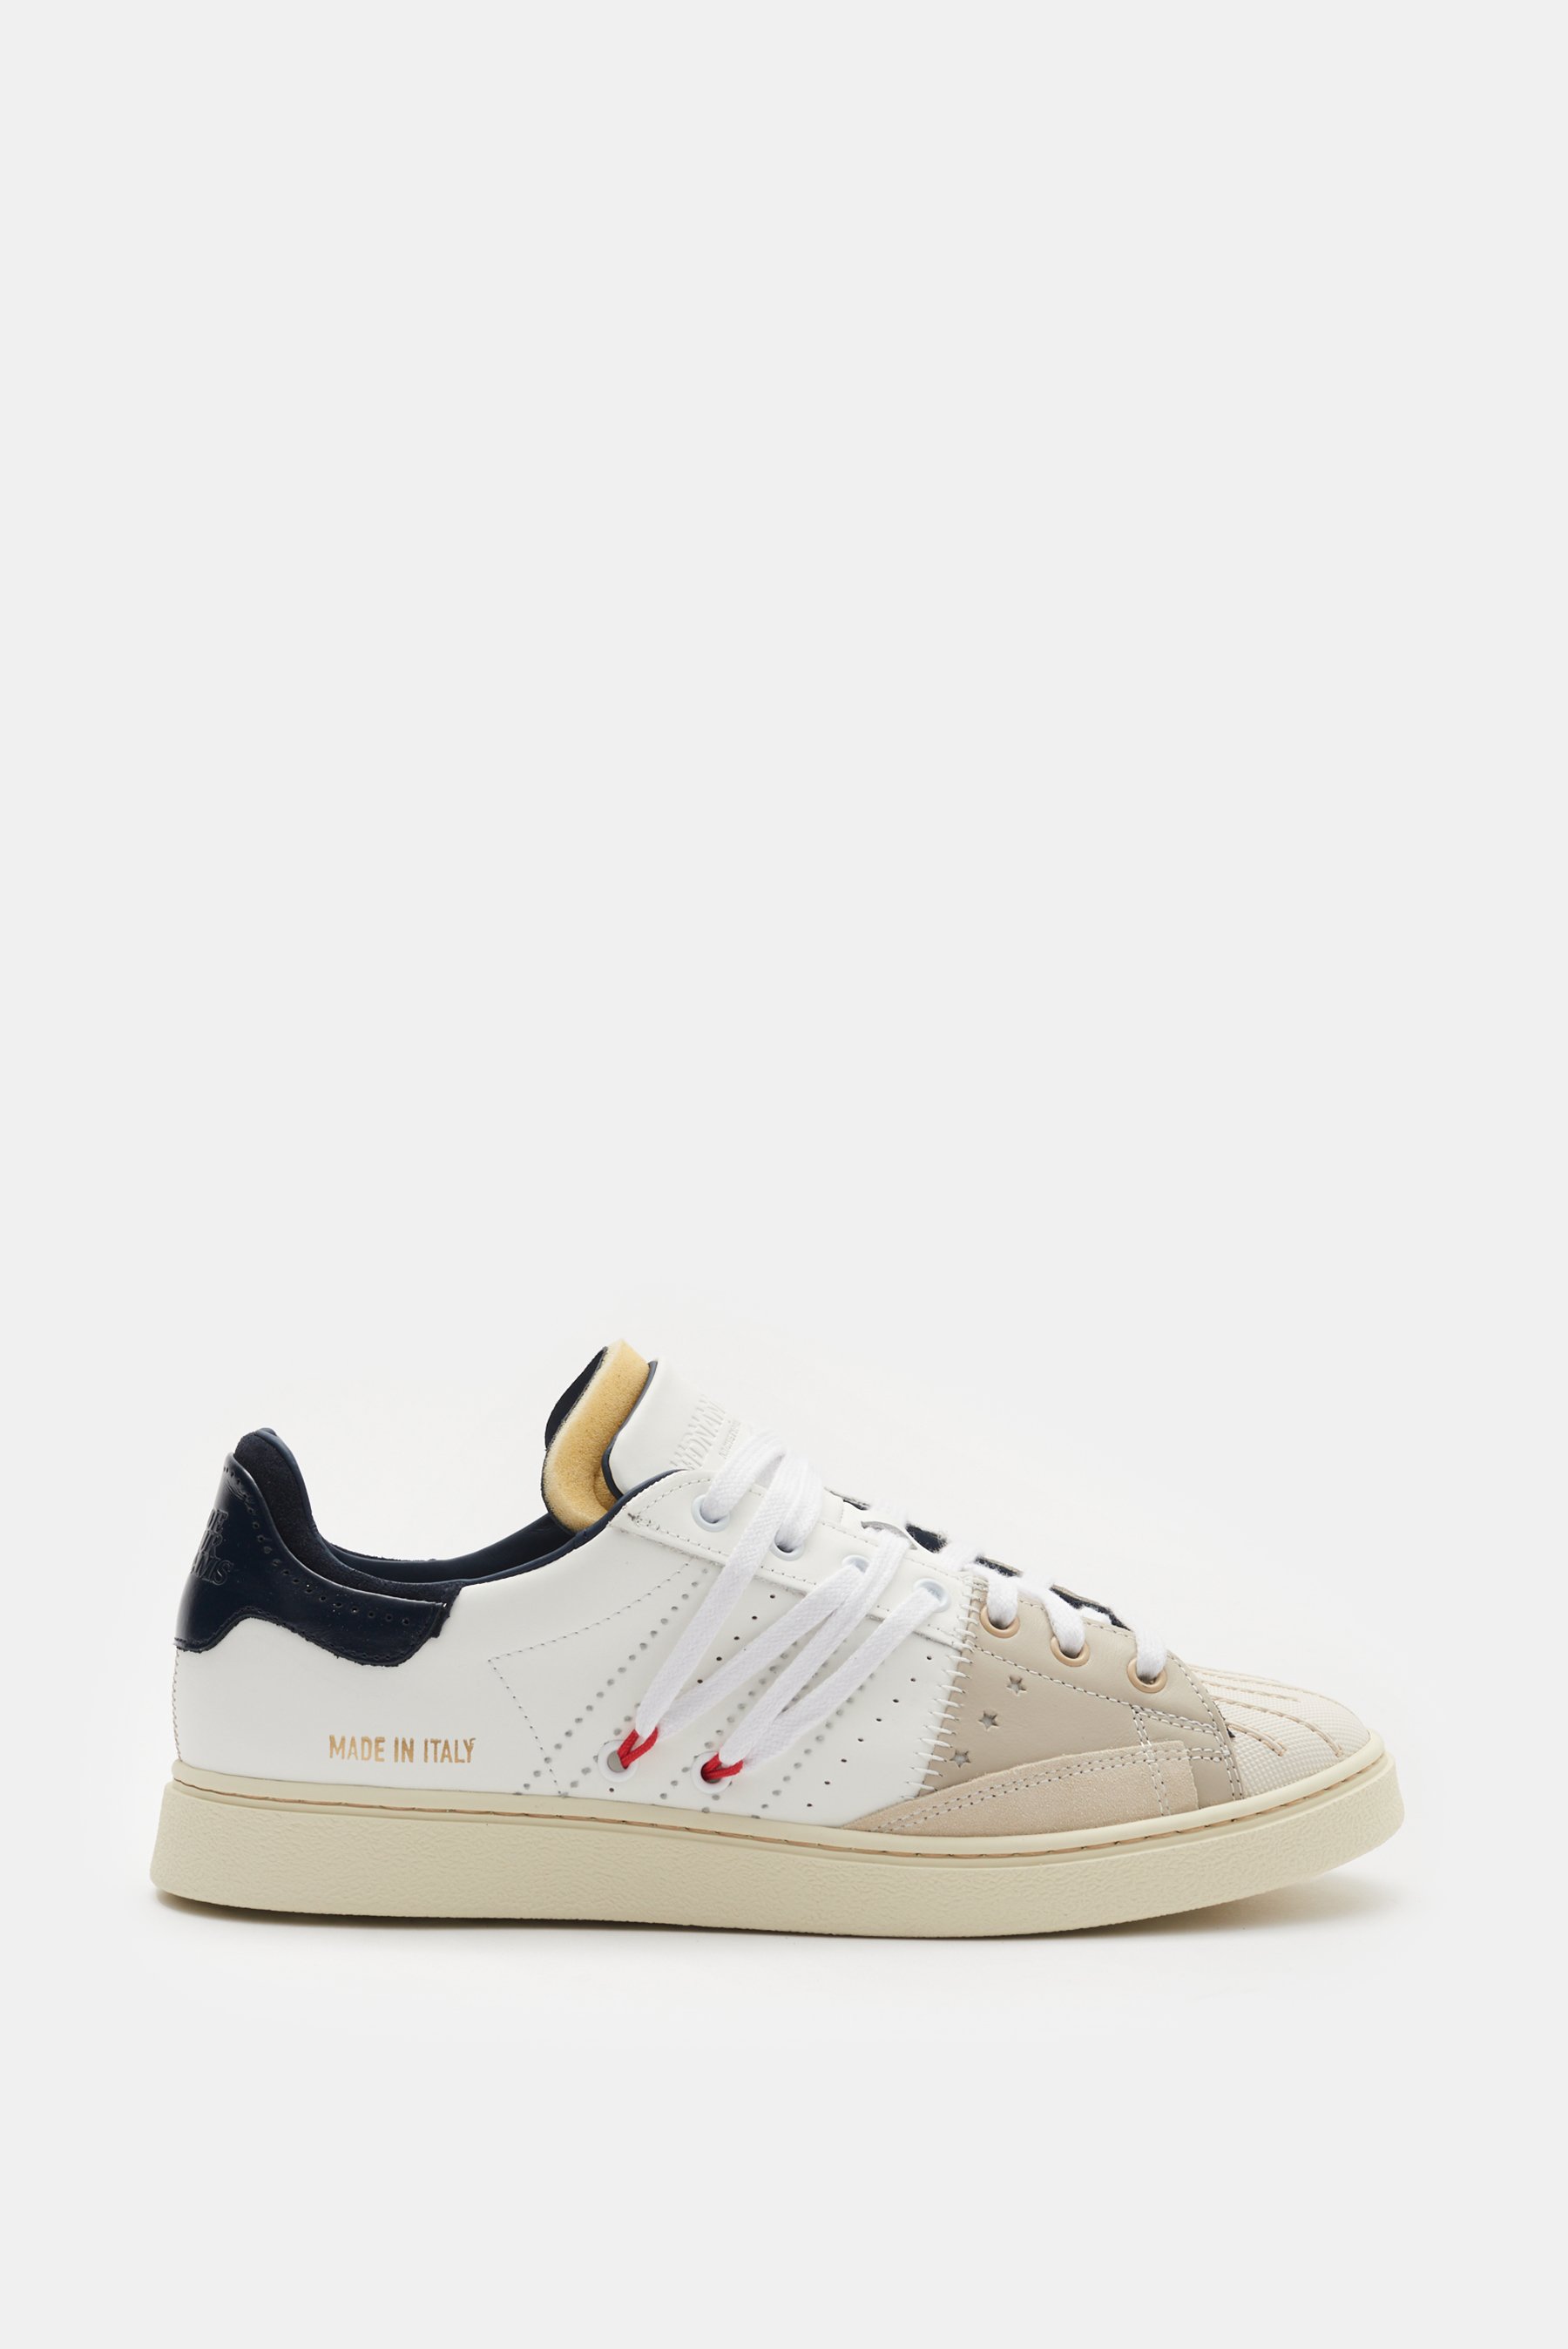 Hidnander - Herren - Sneaker 'Stripeless Ultimate' weiß/beige/navy product